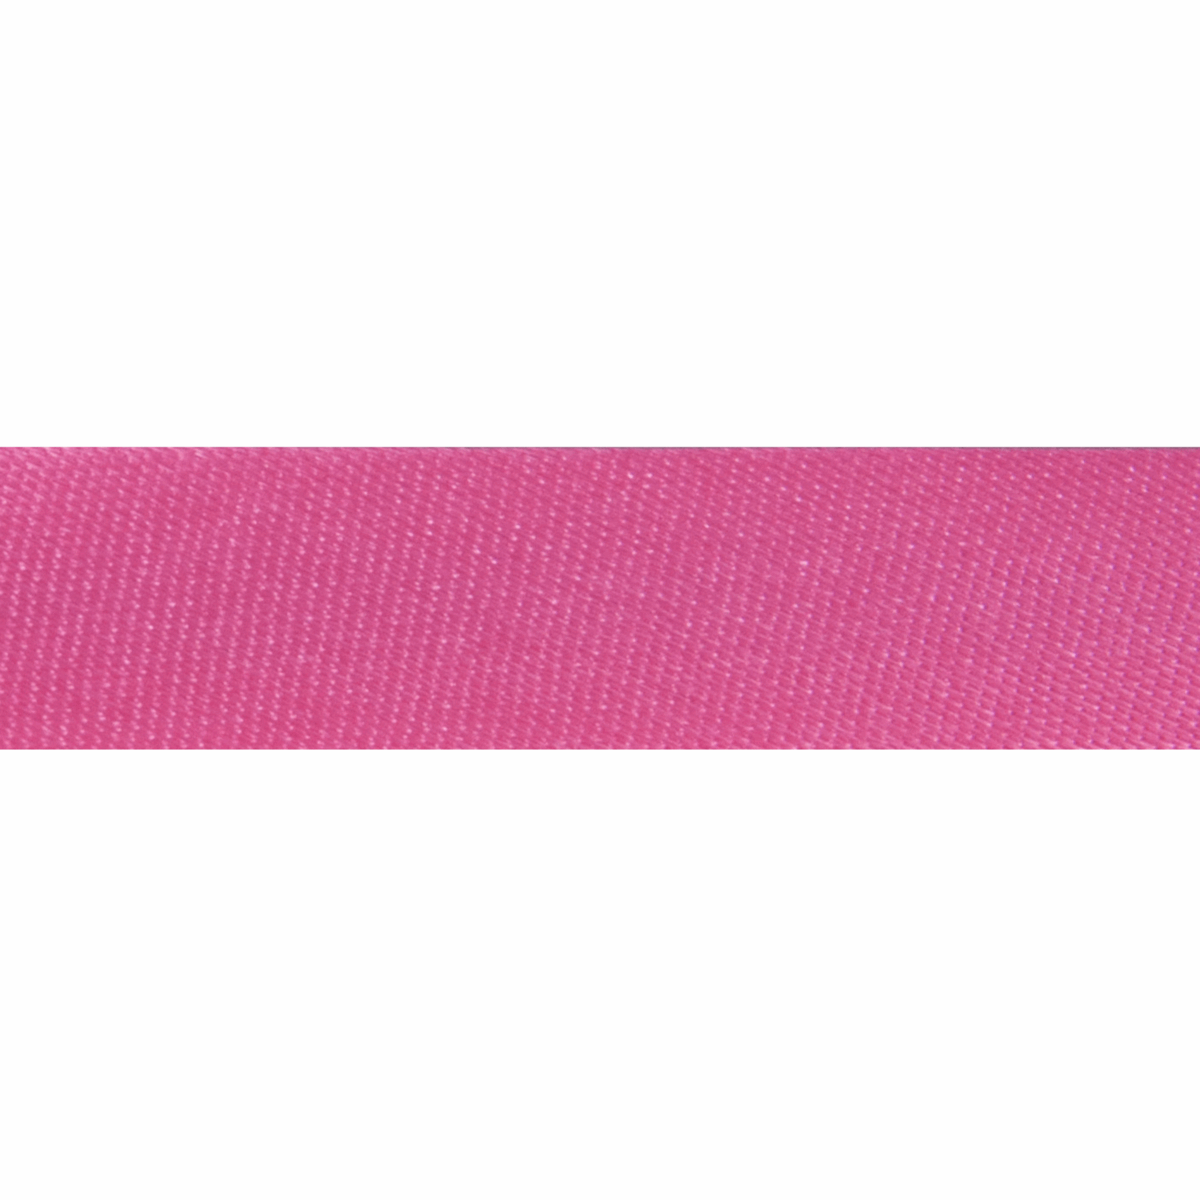 Satin Bias Binding 2m x 15mm - Dark Pink